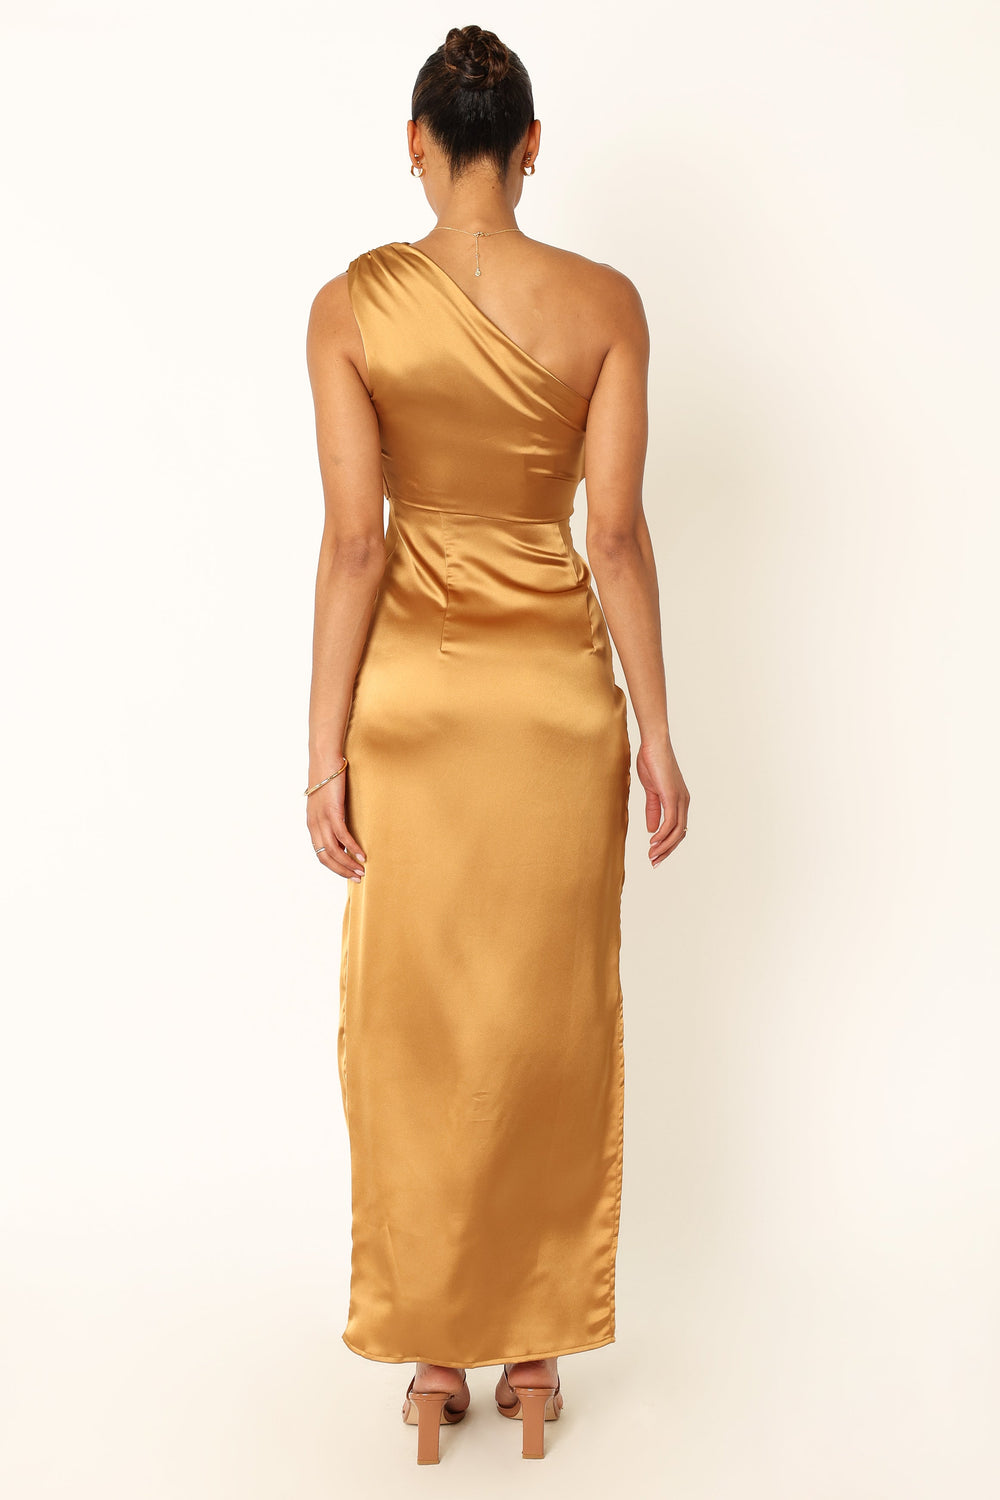 DRESSES @Nadia One Shoulder Maxi Dress - Bronze